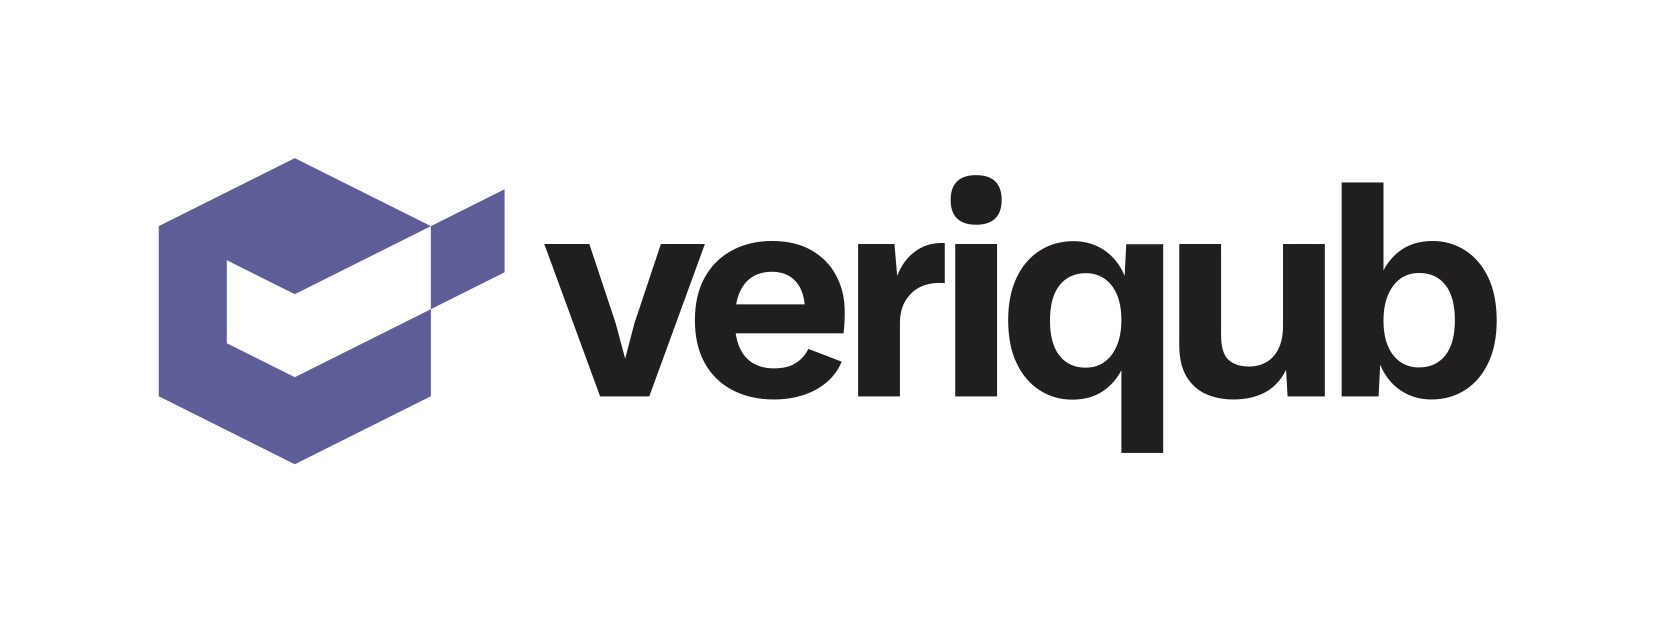 Veriqub Logotype